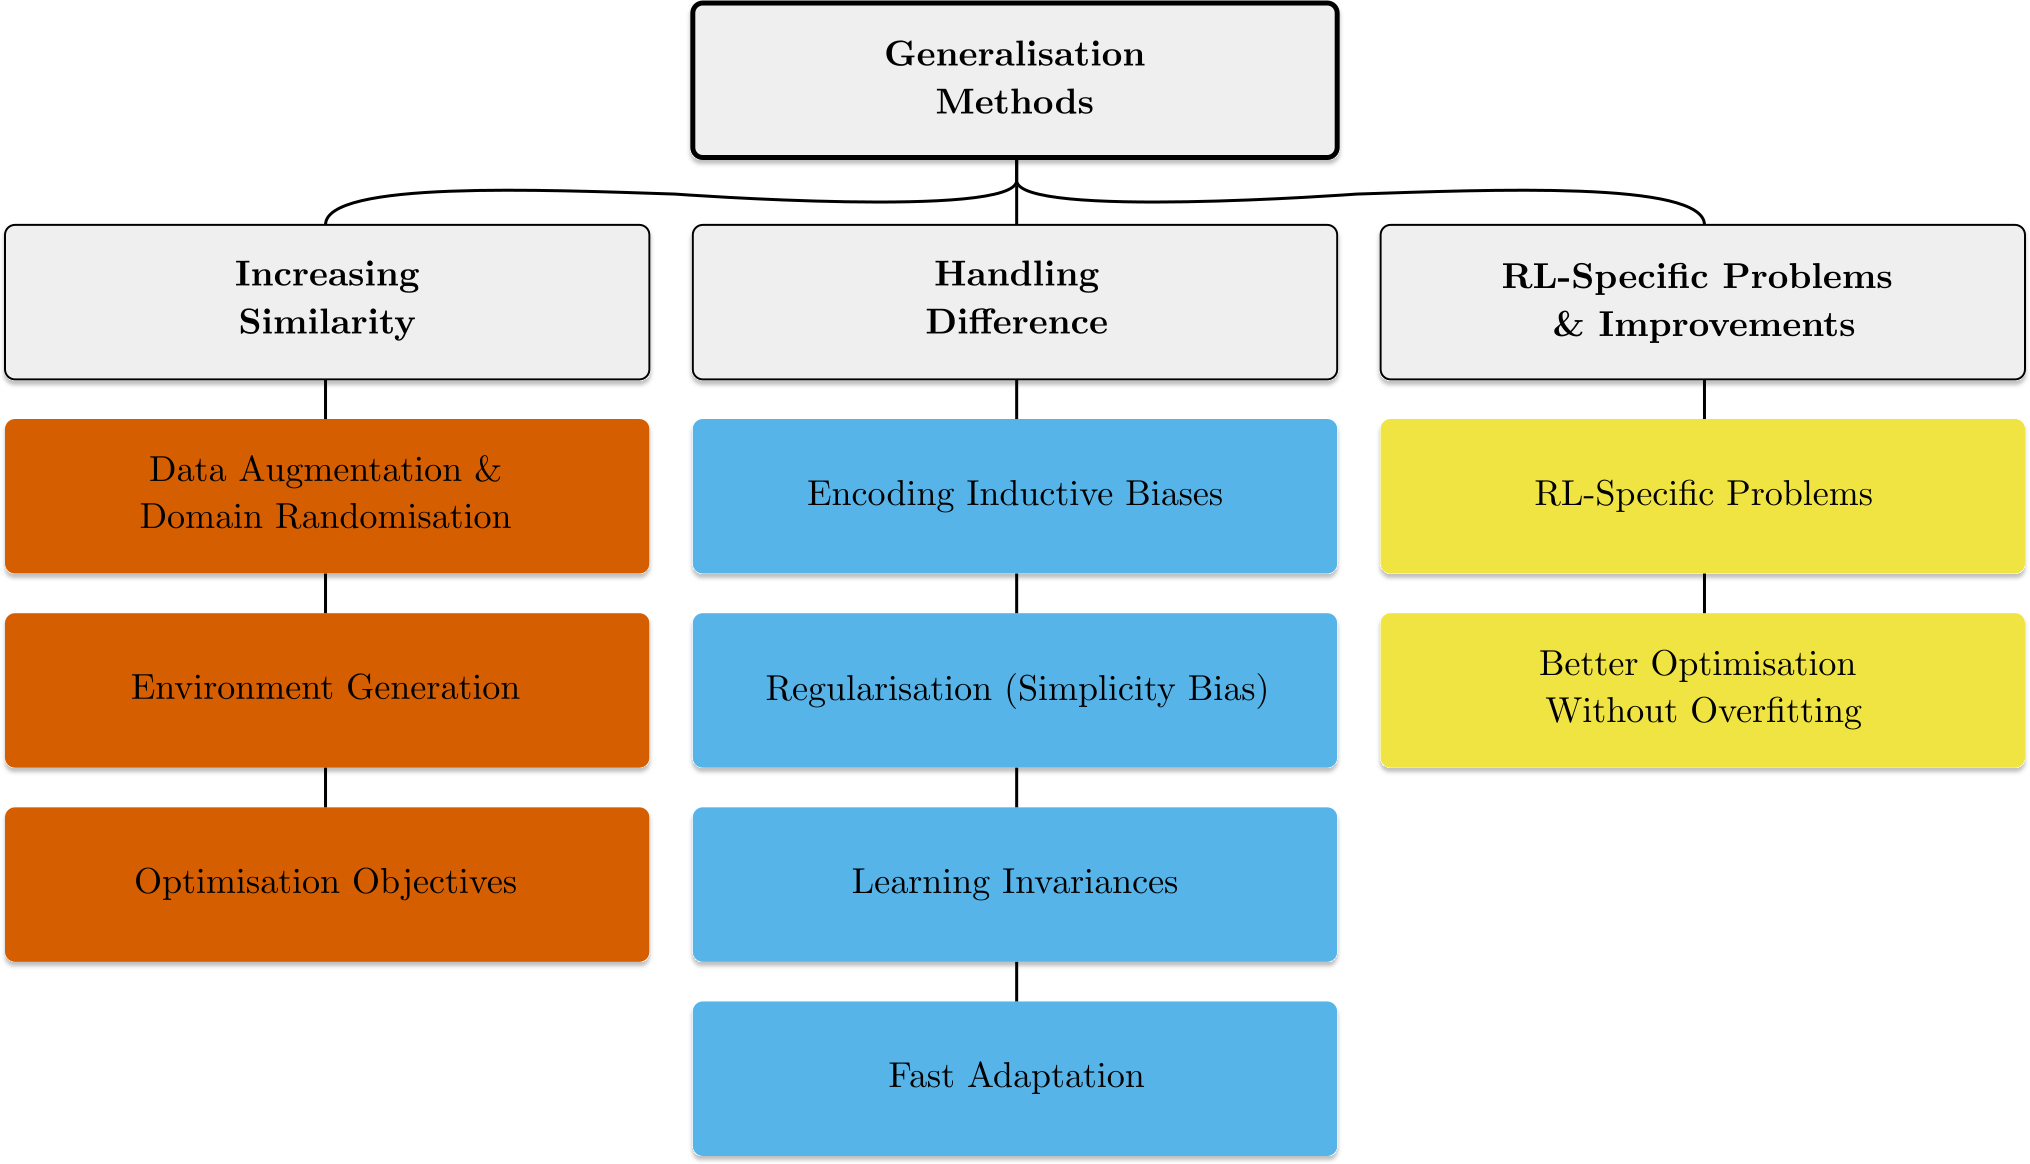 Figure 5: Categorisation of methods for tackling generalisation in reinforcement learning